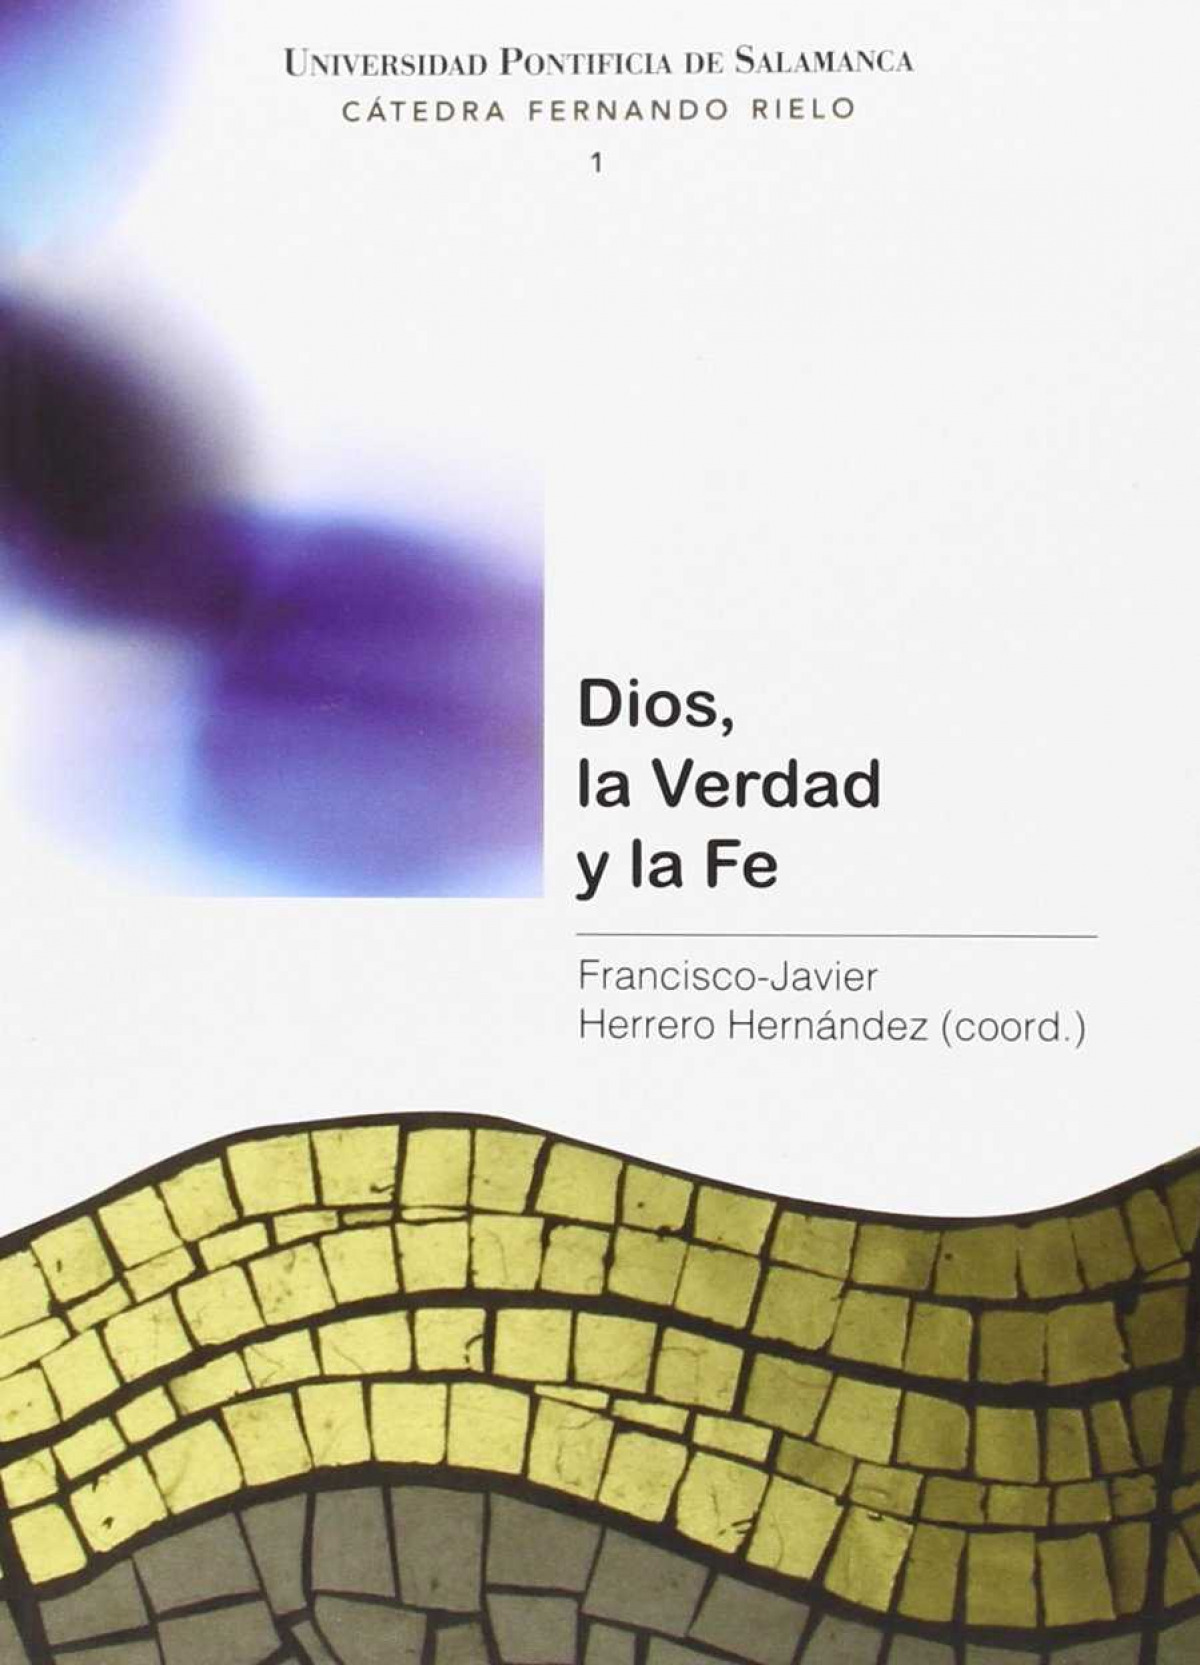 Dios, la Verdad y la Fe - Herrero Hernández, Francisco-Javier (coo